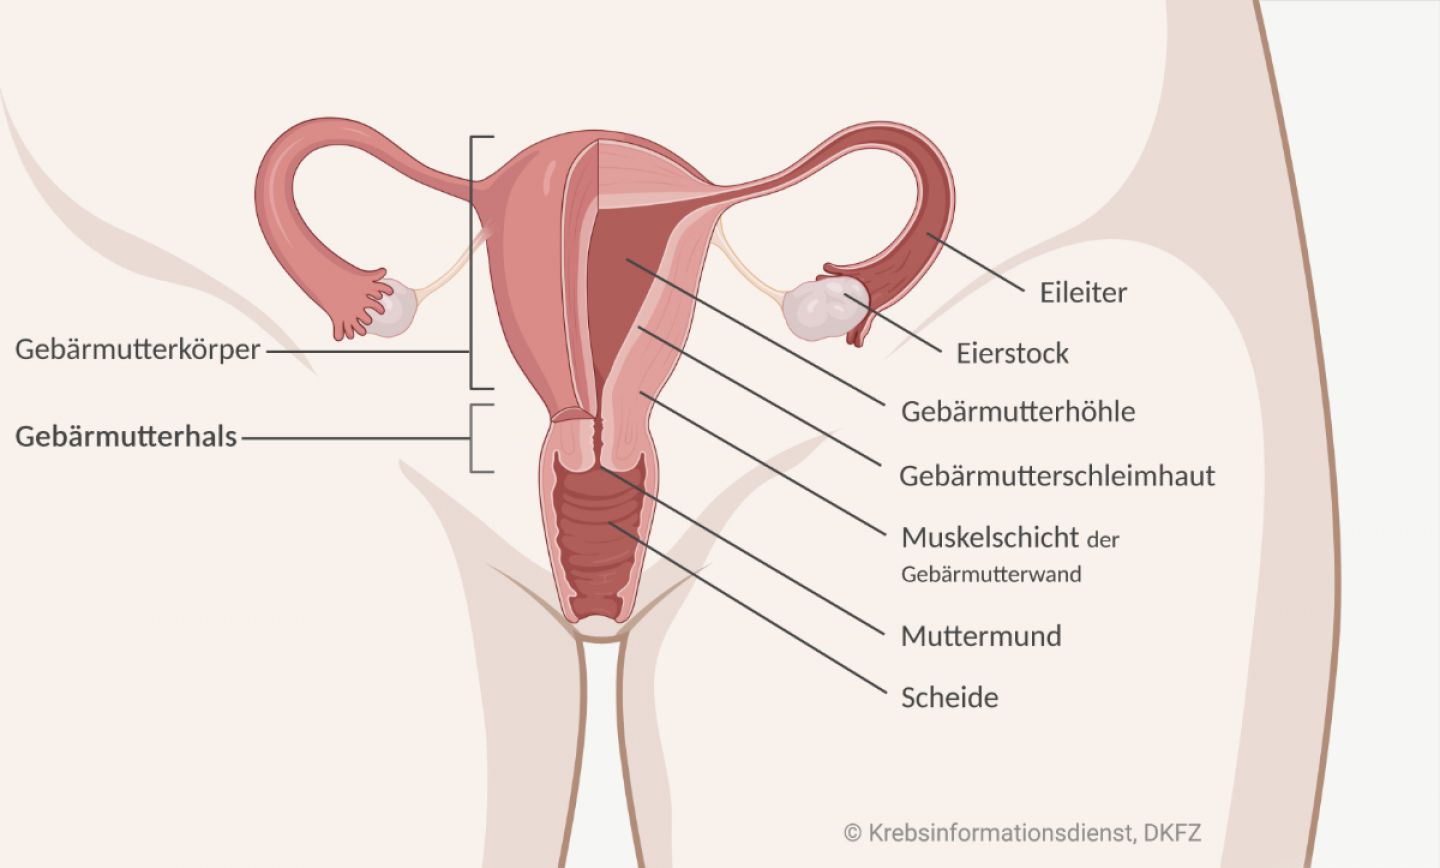 Der Gebärmutterhals liegt im unteren Bereich der Gebärmutter. Er mündet in die Scheide.